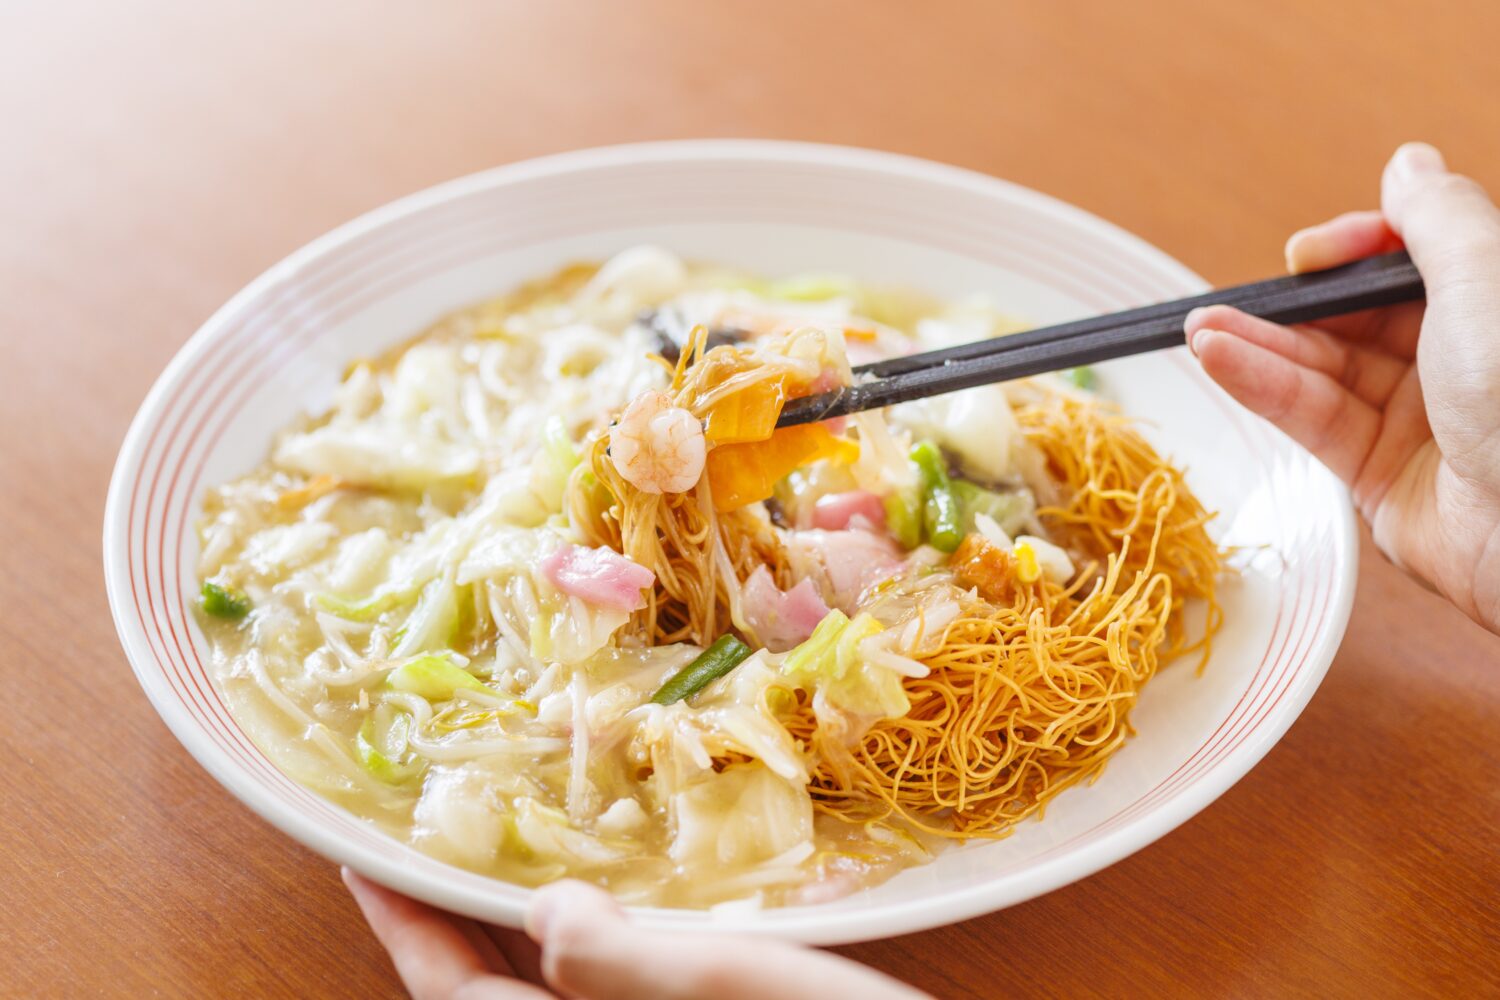 Divide the deep-fried noodles in half.